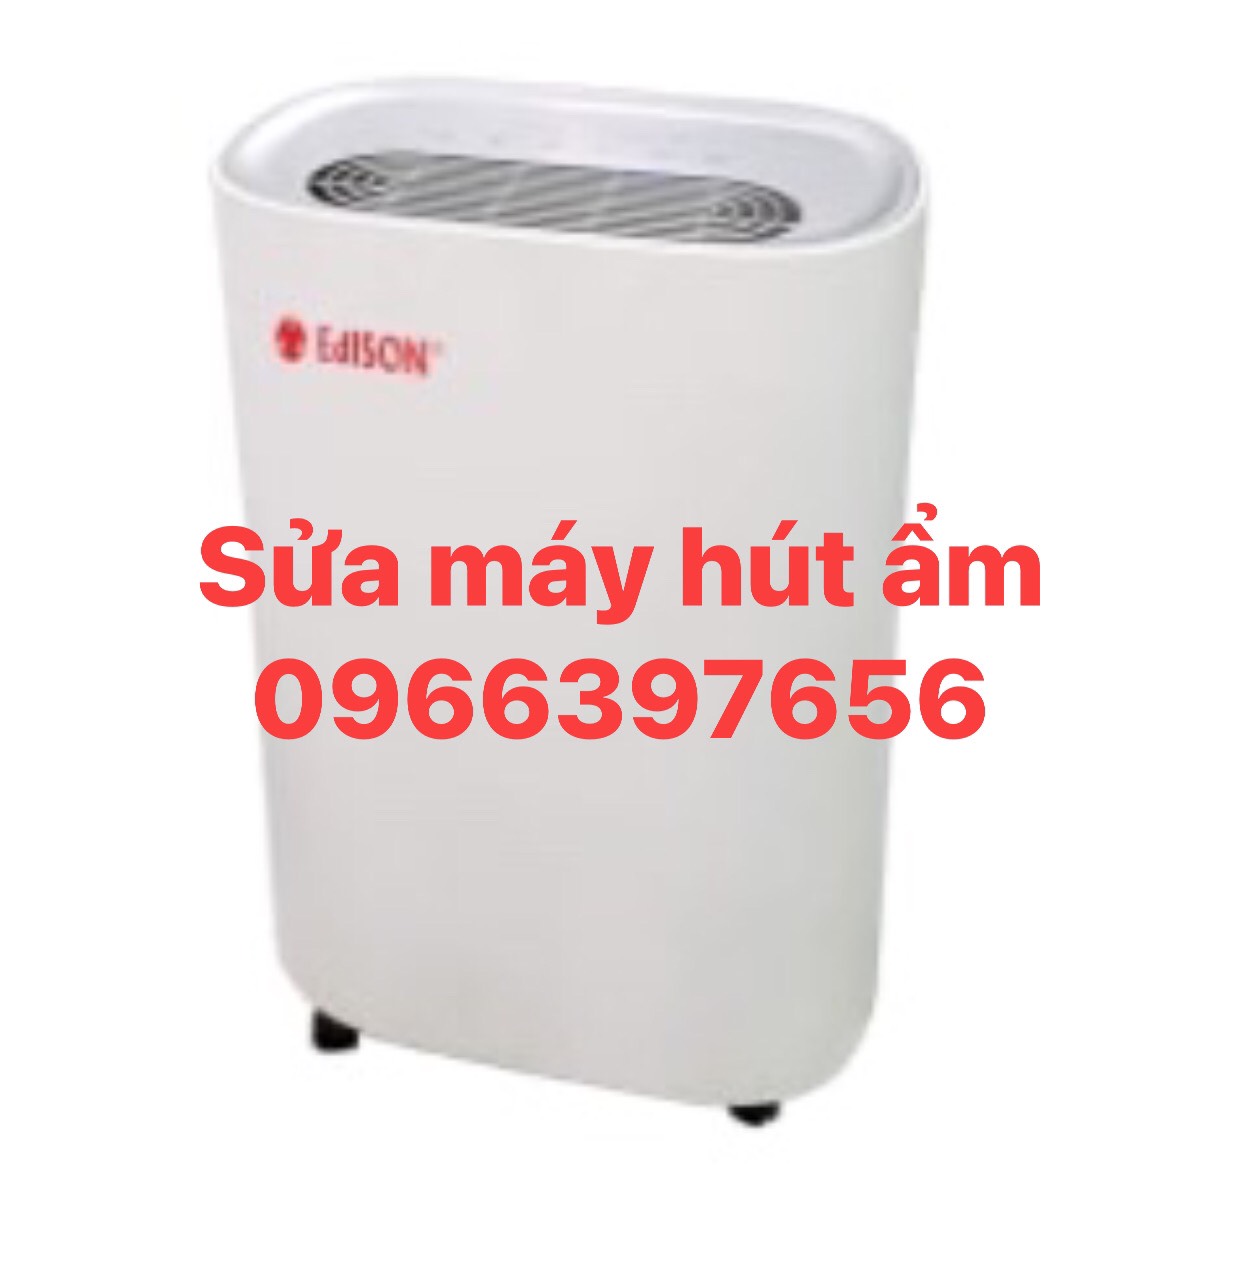 Dịch vụ sửa chữa máy hút ẩm tại nhà Hà Nội 0966397656